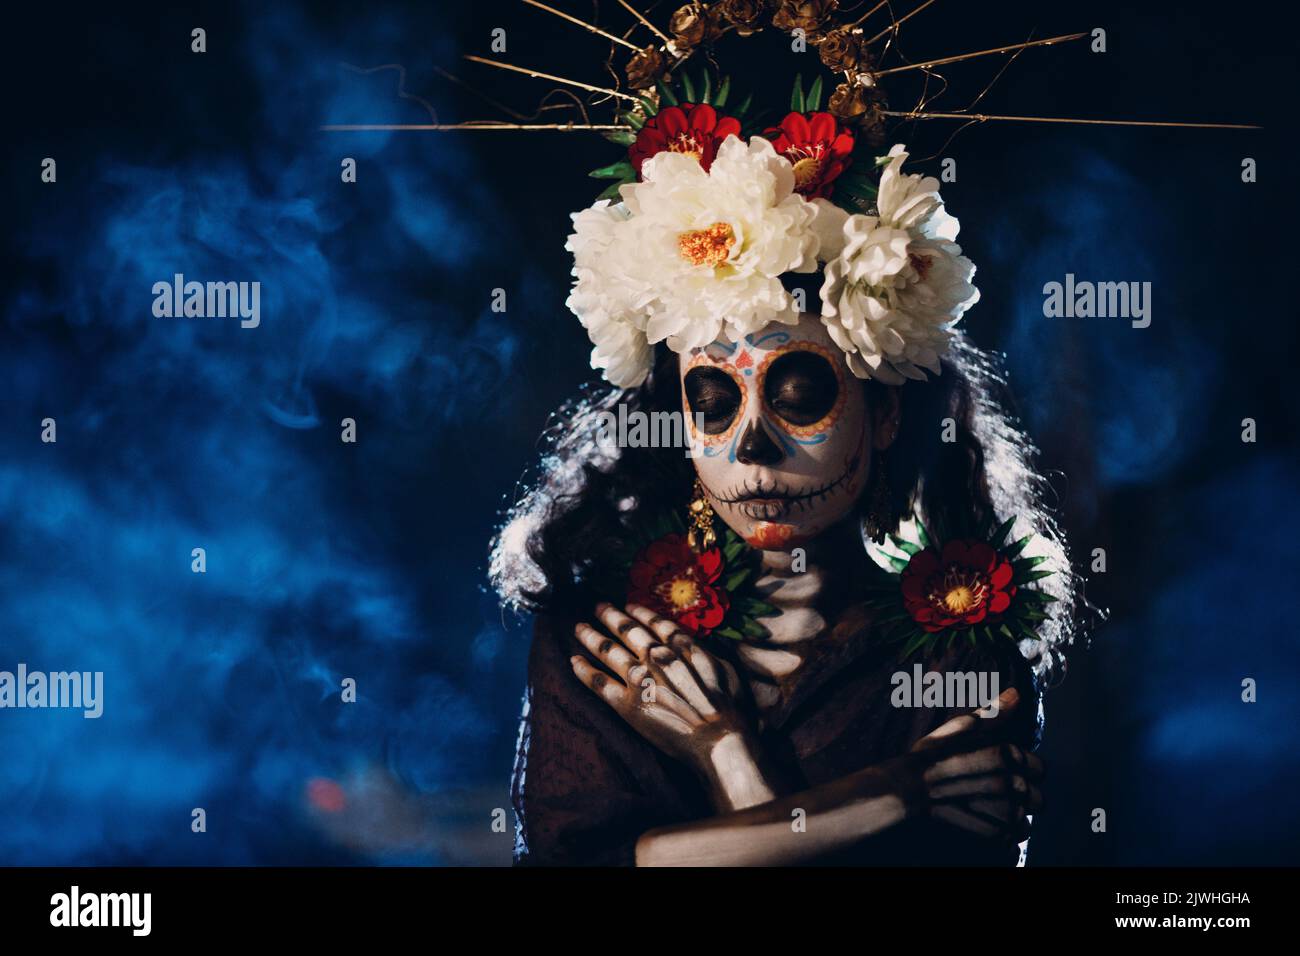 Frau mit mexikanischem Totenkopf halloween Make-up auf dem Gesicht. Tag der Toten alias Dia de los Muertos und halloween-Konzept. Stockfoto